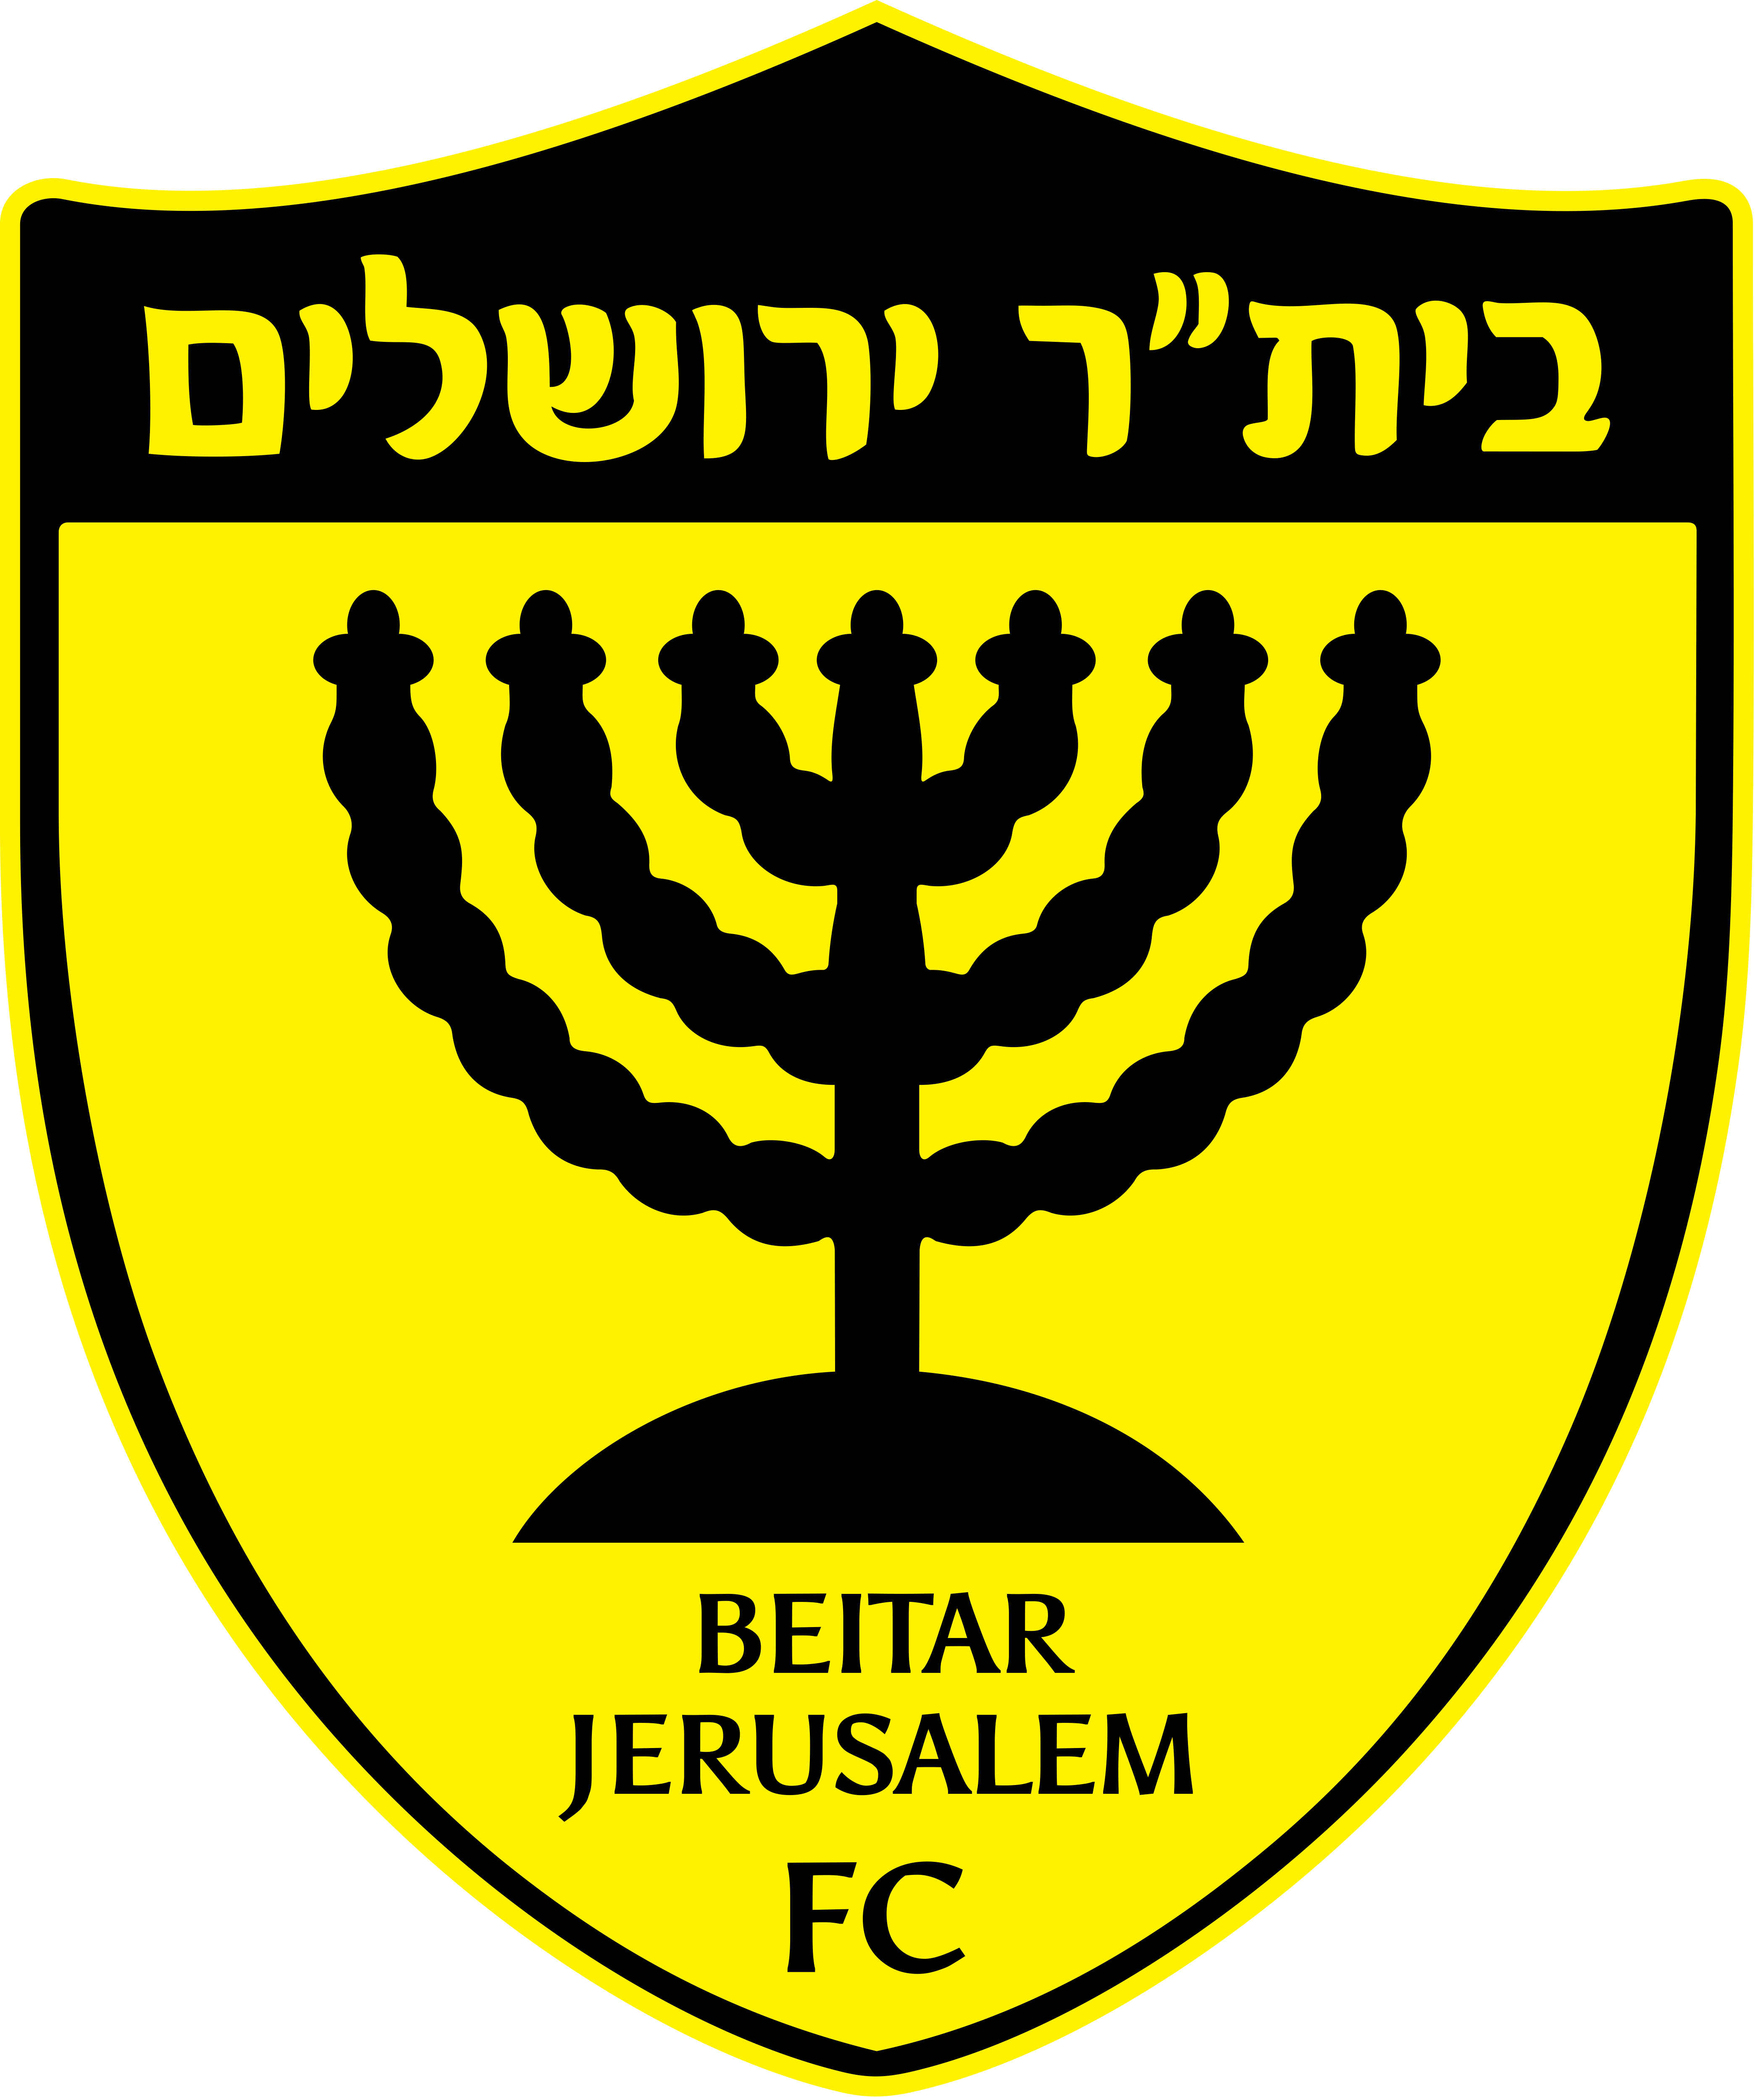 貝塔特朗普耶路撒冷(比達耶路撒冷)